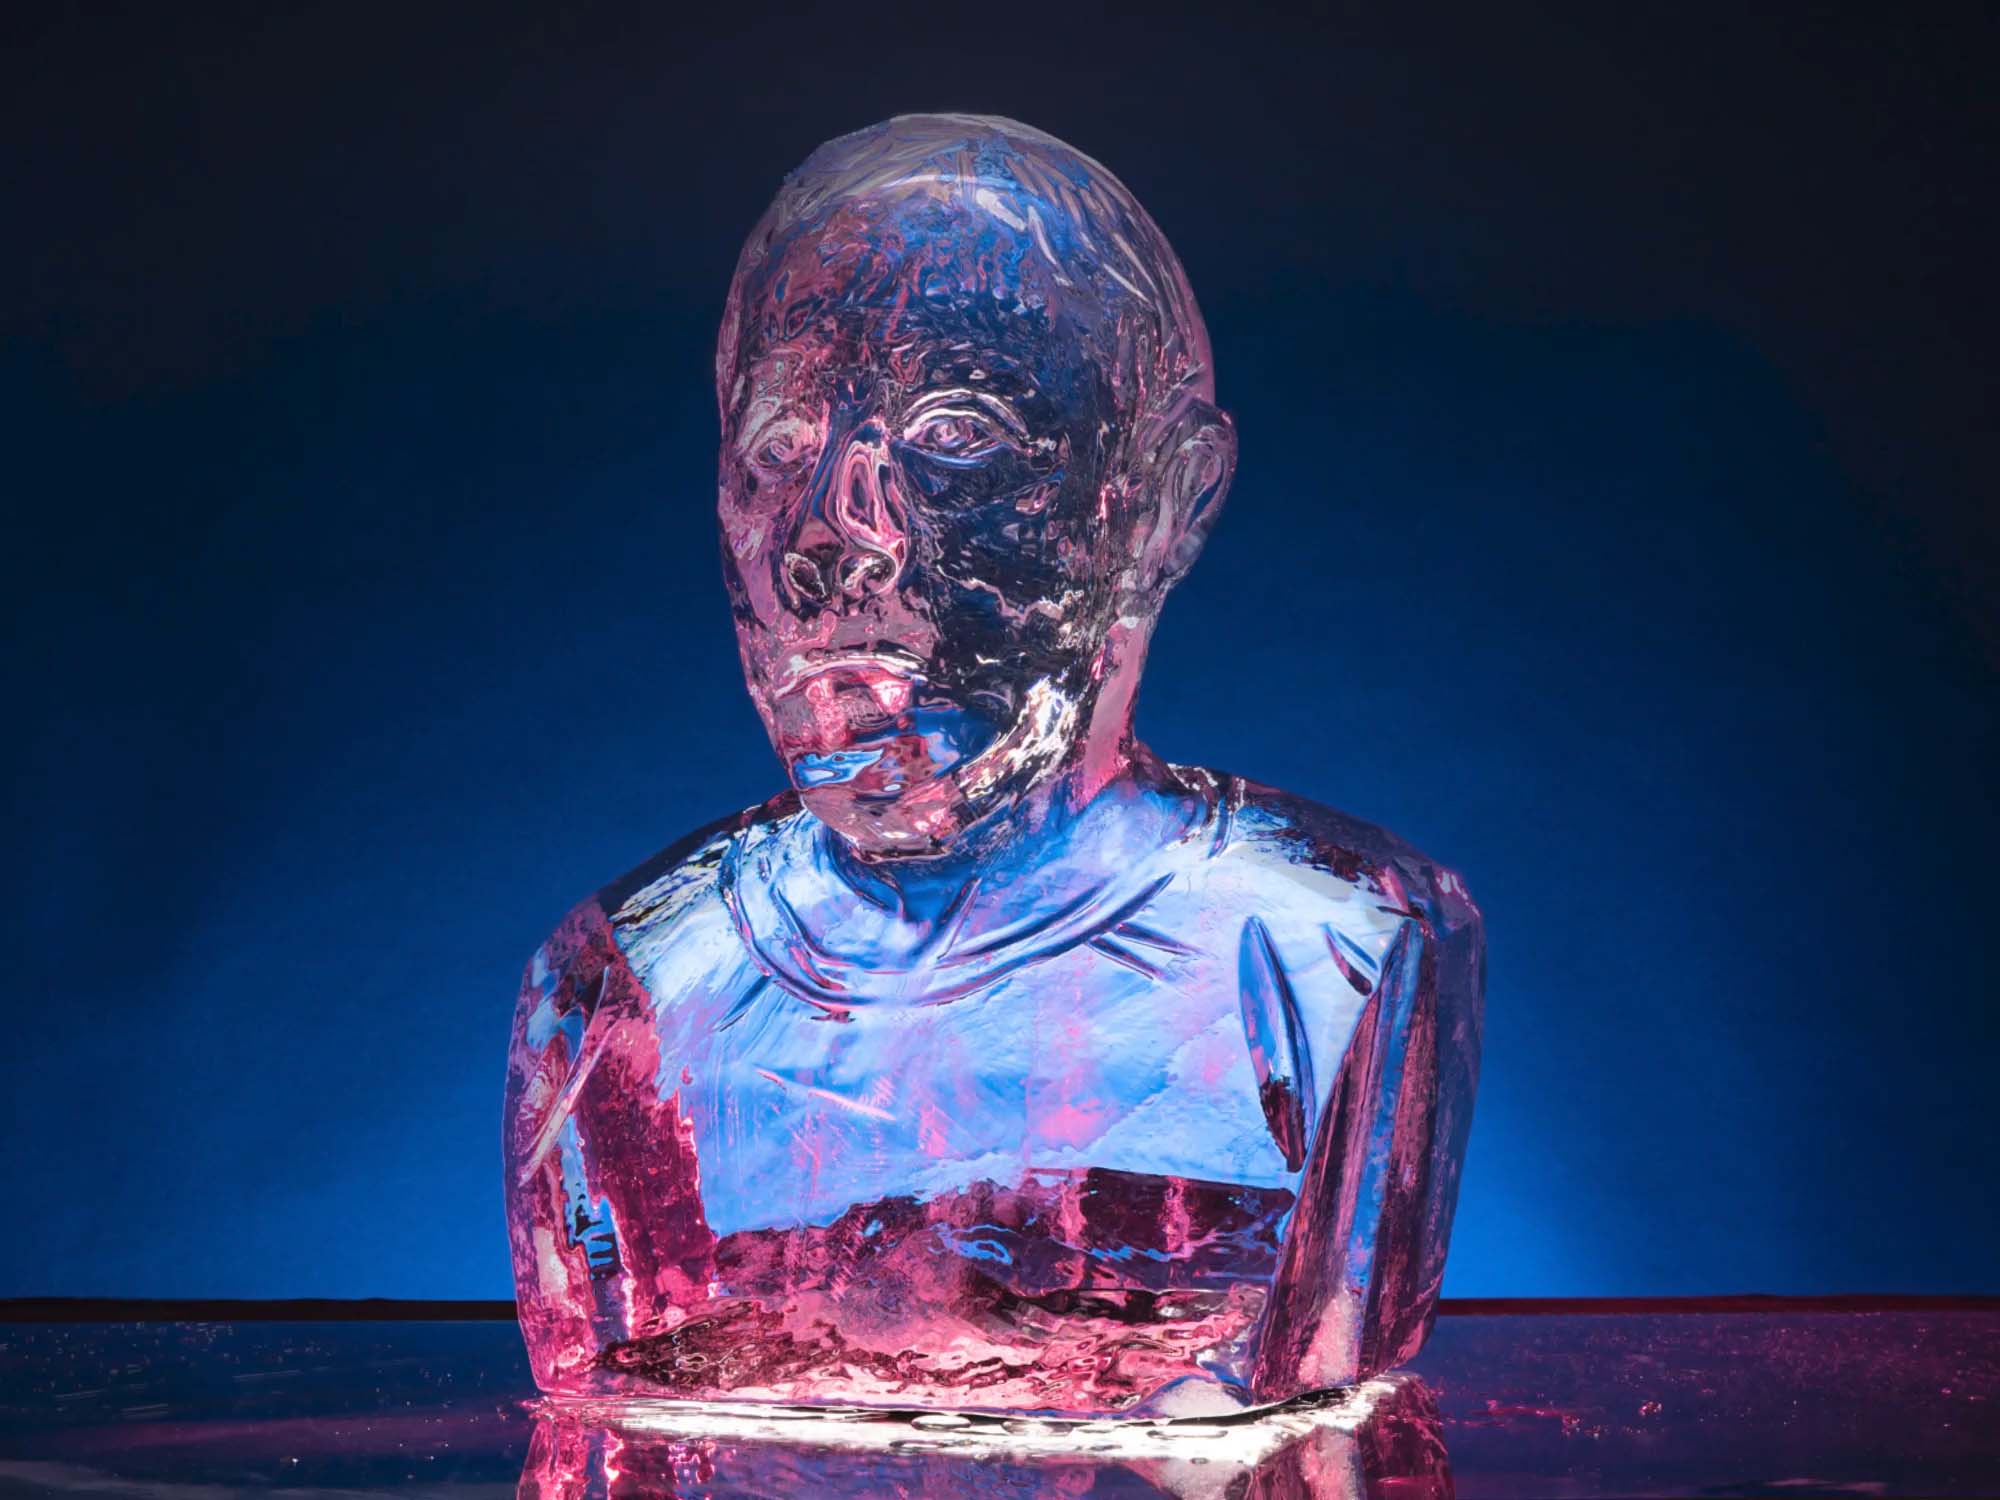 An ice sculpture bust of Mark Zuckerberg melting